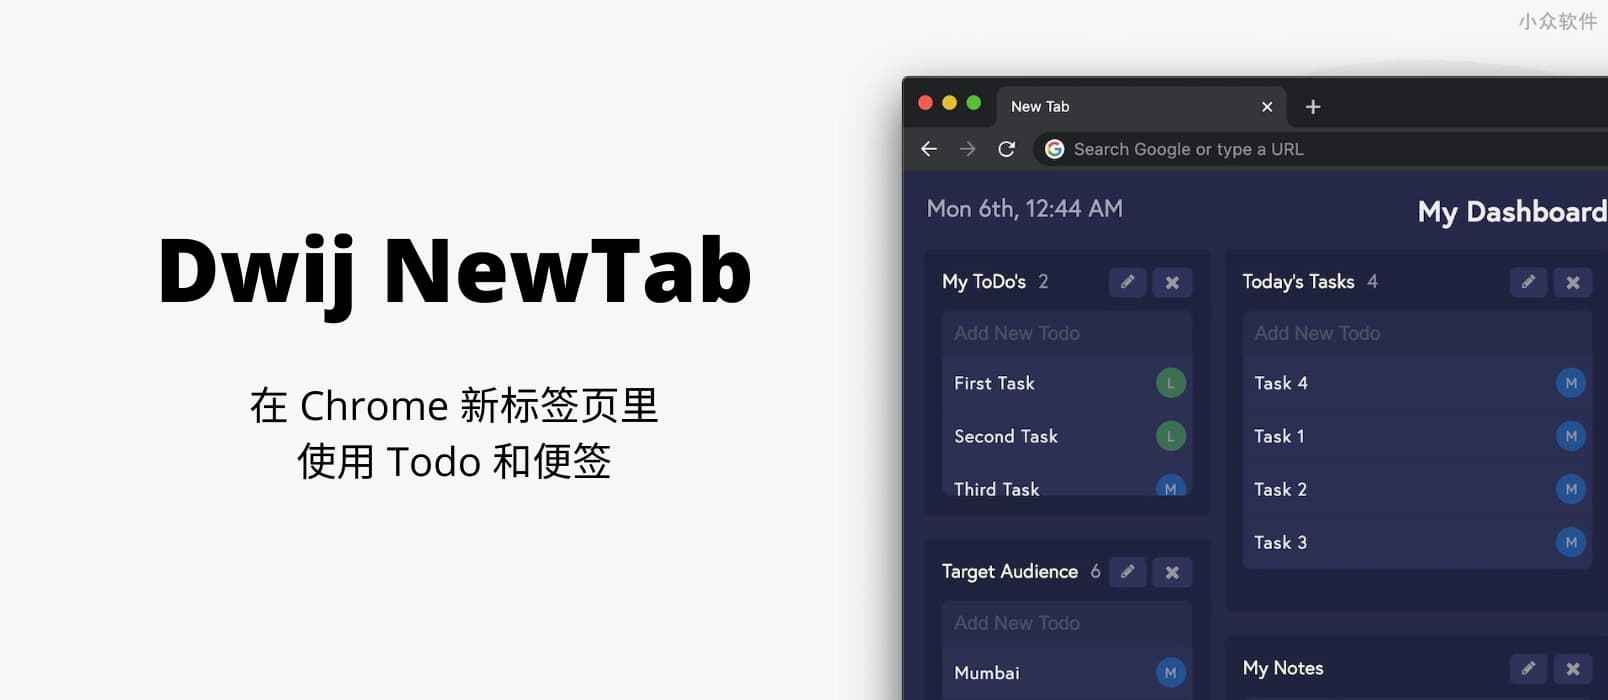 Dwij NewTab - 在新标签页使用 Todo 和便签，可打印日报表[Chrome/Edge] 1